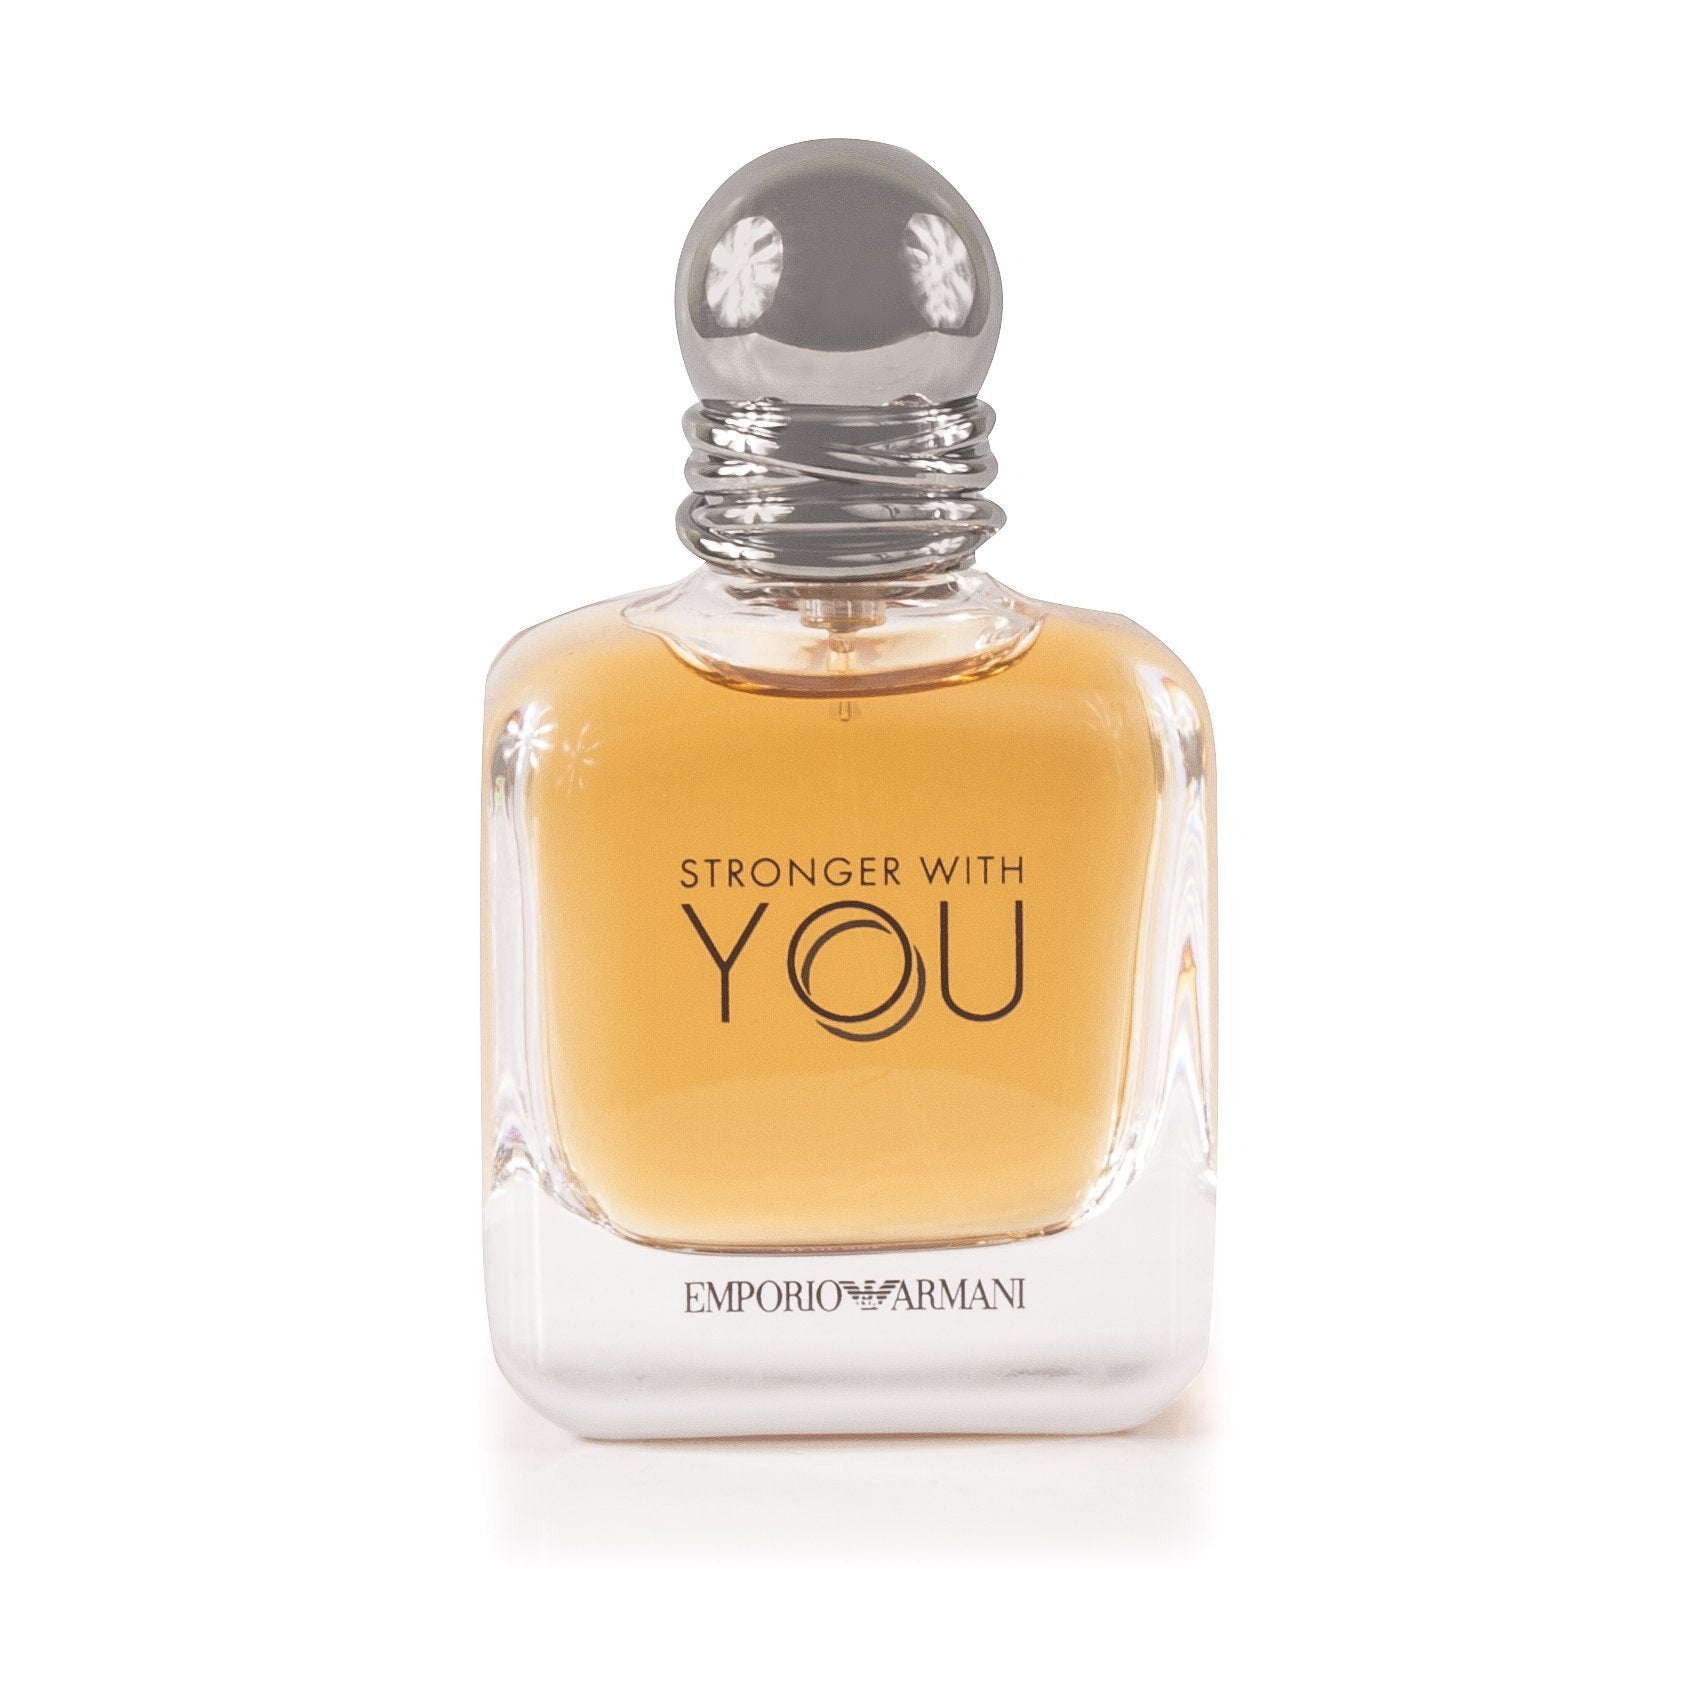 https://www.fragranceoutlet.com/cdn/shop/products/Armani-Stronger_with_you-Men-Eau_de_Toilette-1.7-Best-Price-Fragrance-Parfume-FragranceOutlet.com-MAIN.jpg?v=1569132848&width=1946